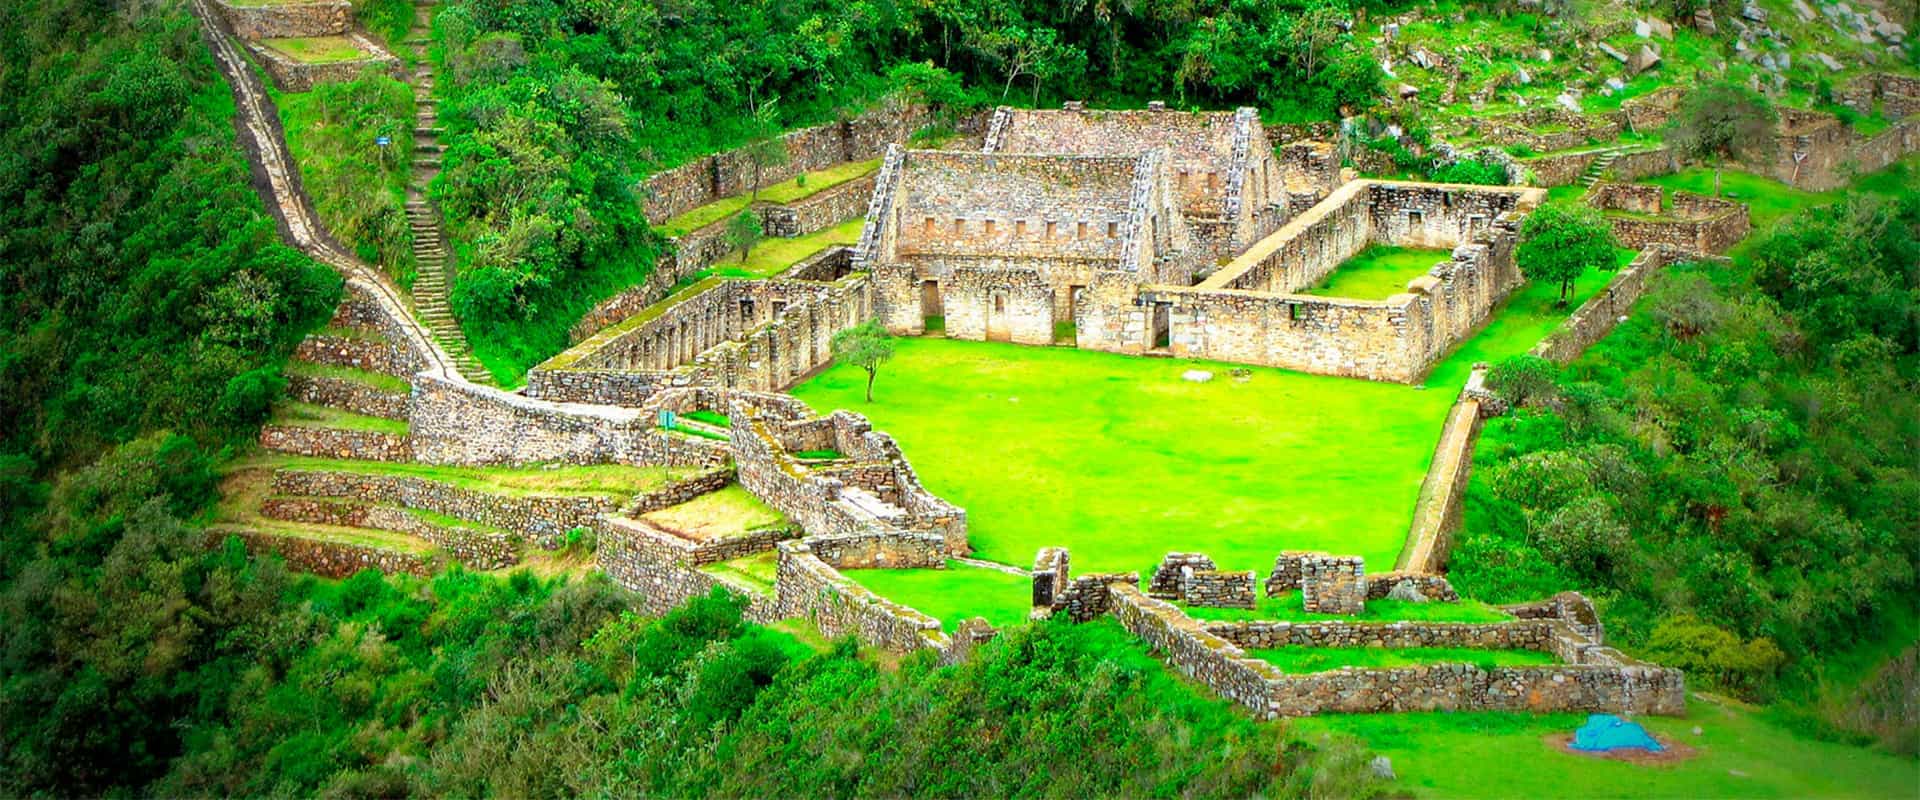 Travel To Choquequirao Tour Incas Path